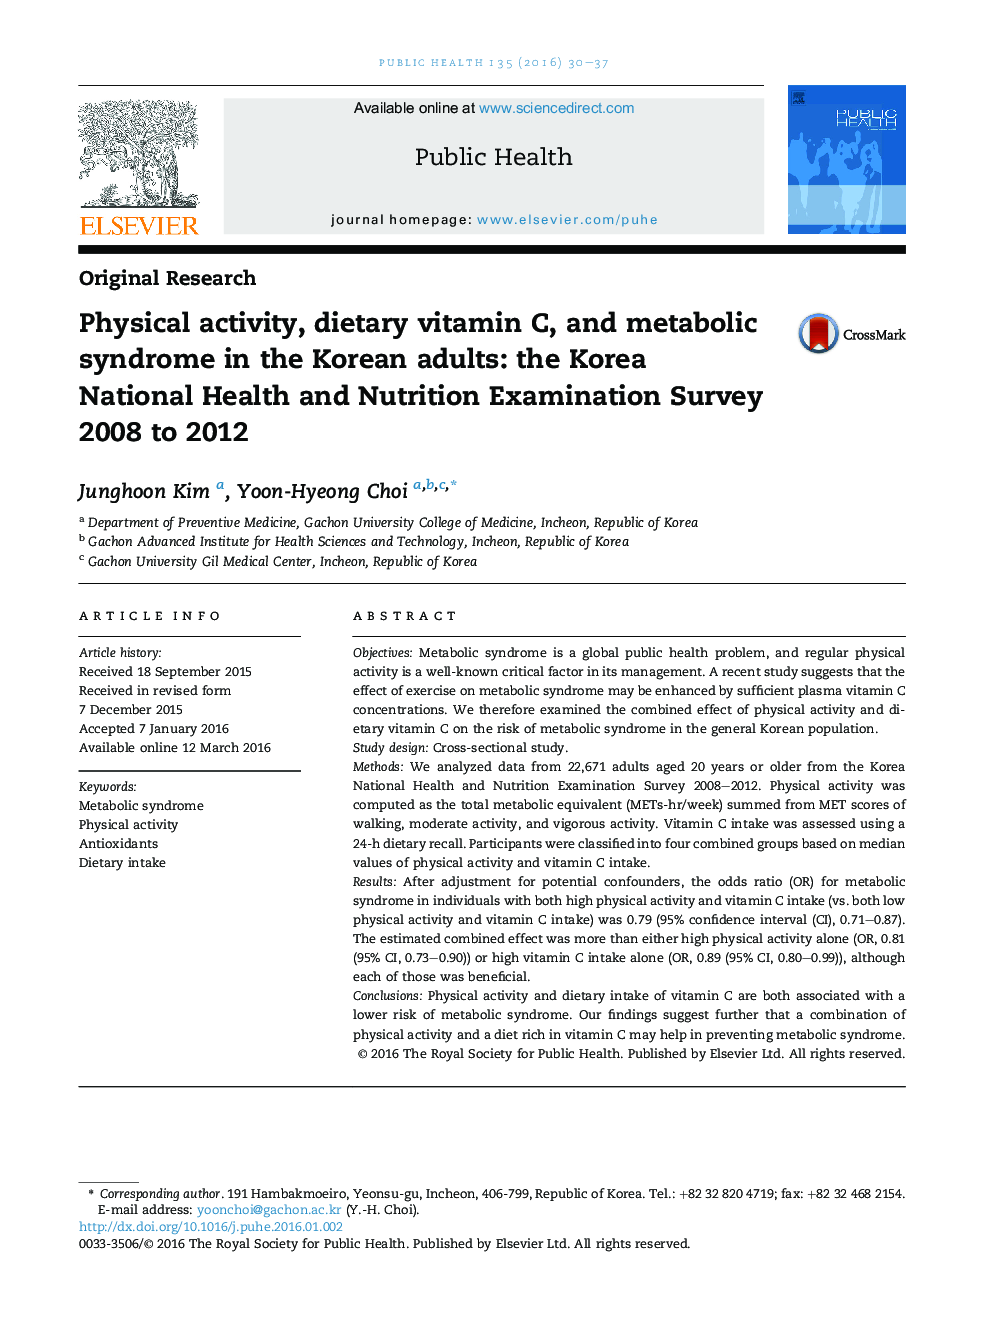 فعالیت بدنی، ویتامین C در رژیم غذایی و سندرم متابولیک در بزرگسالان کره ای: بهداشت ملی کره و بررسی آزمایشی تغذیه 2008-2012